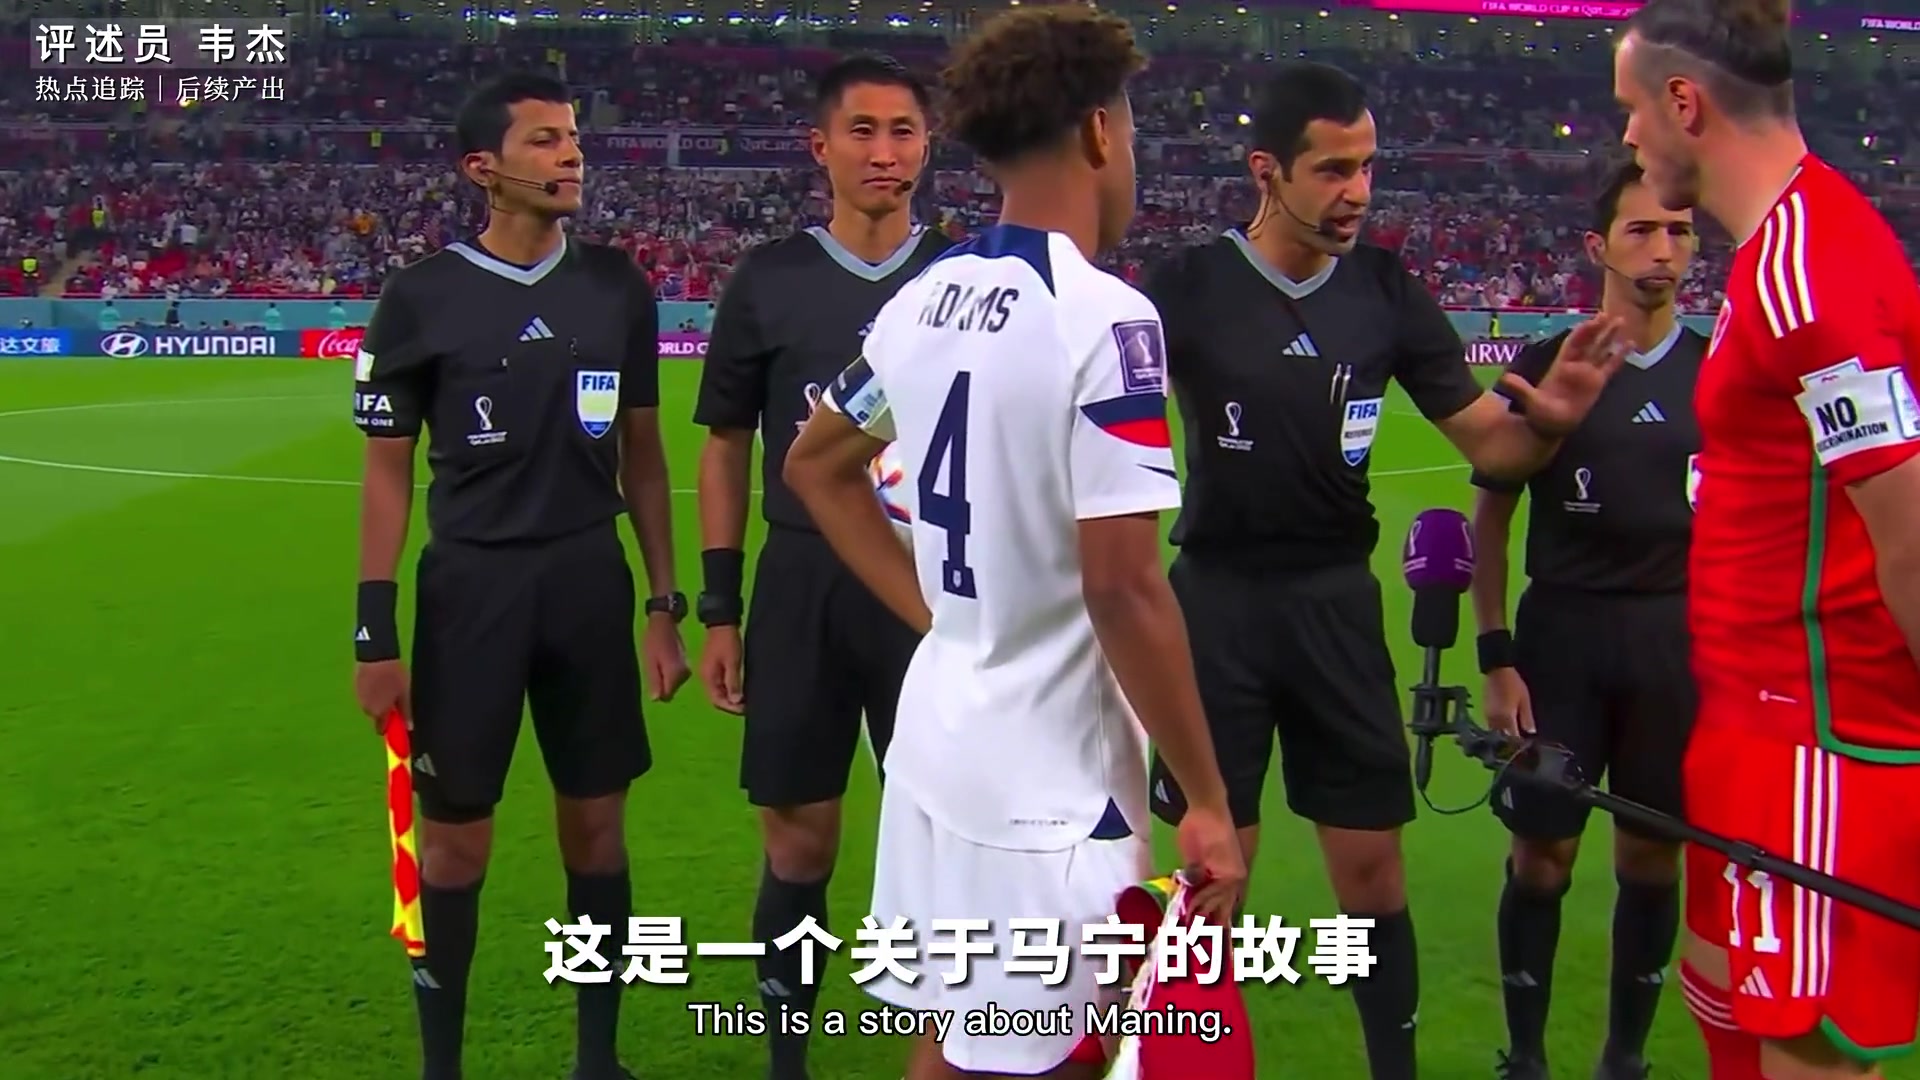 这是马宁关于世界杯的故事 也是中国裁判在世界杯舞台的故事